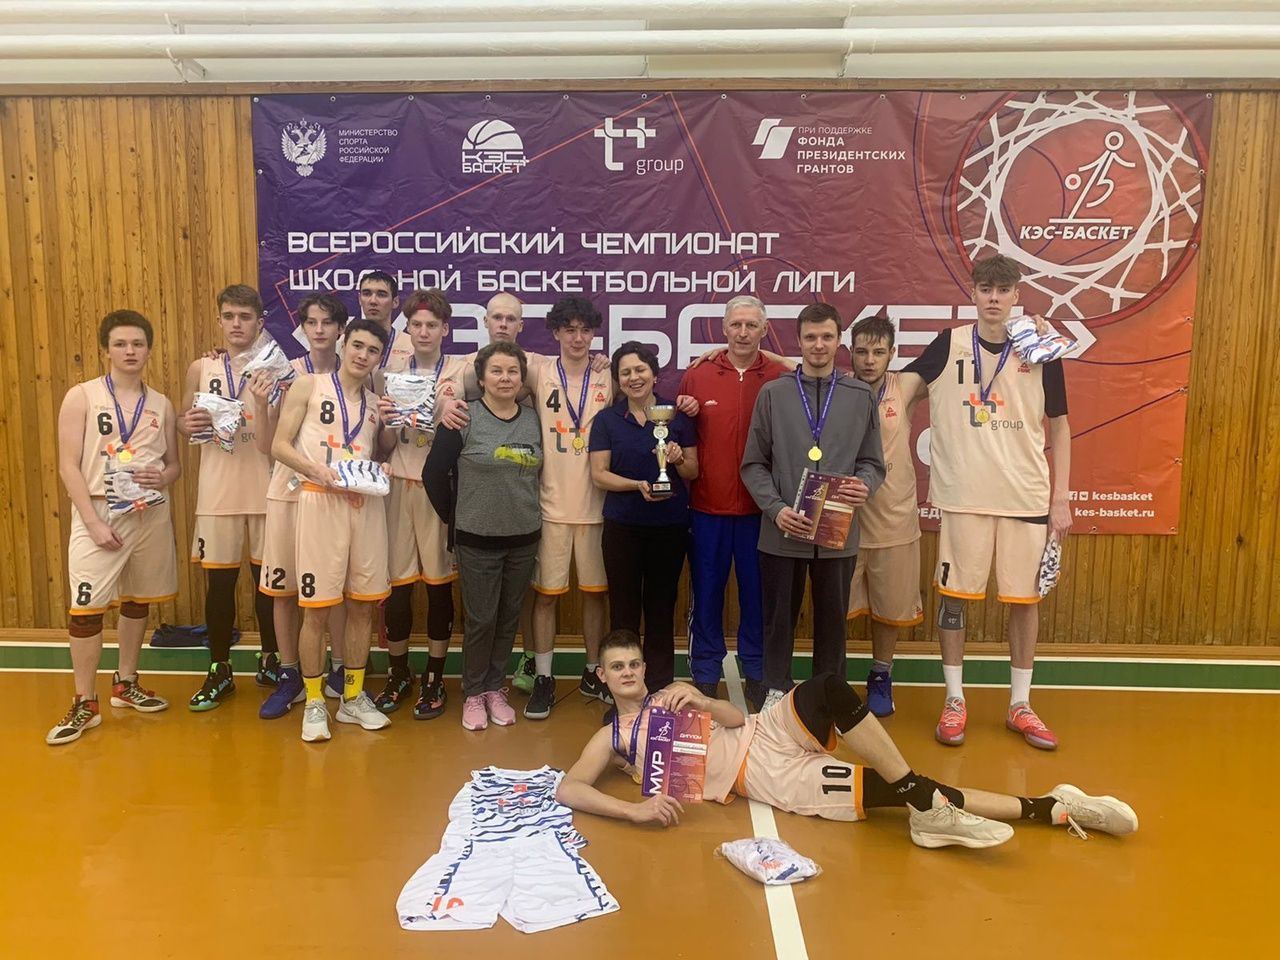 Краснотурьинские юноши  выиграли окружной этап баскетбольных соревнований, девушки стали вторыми